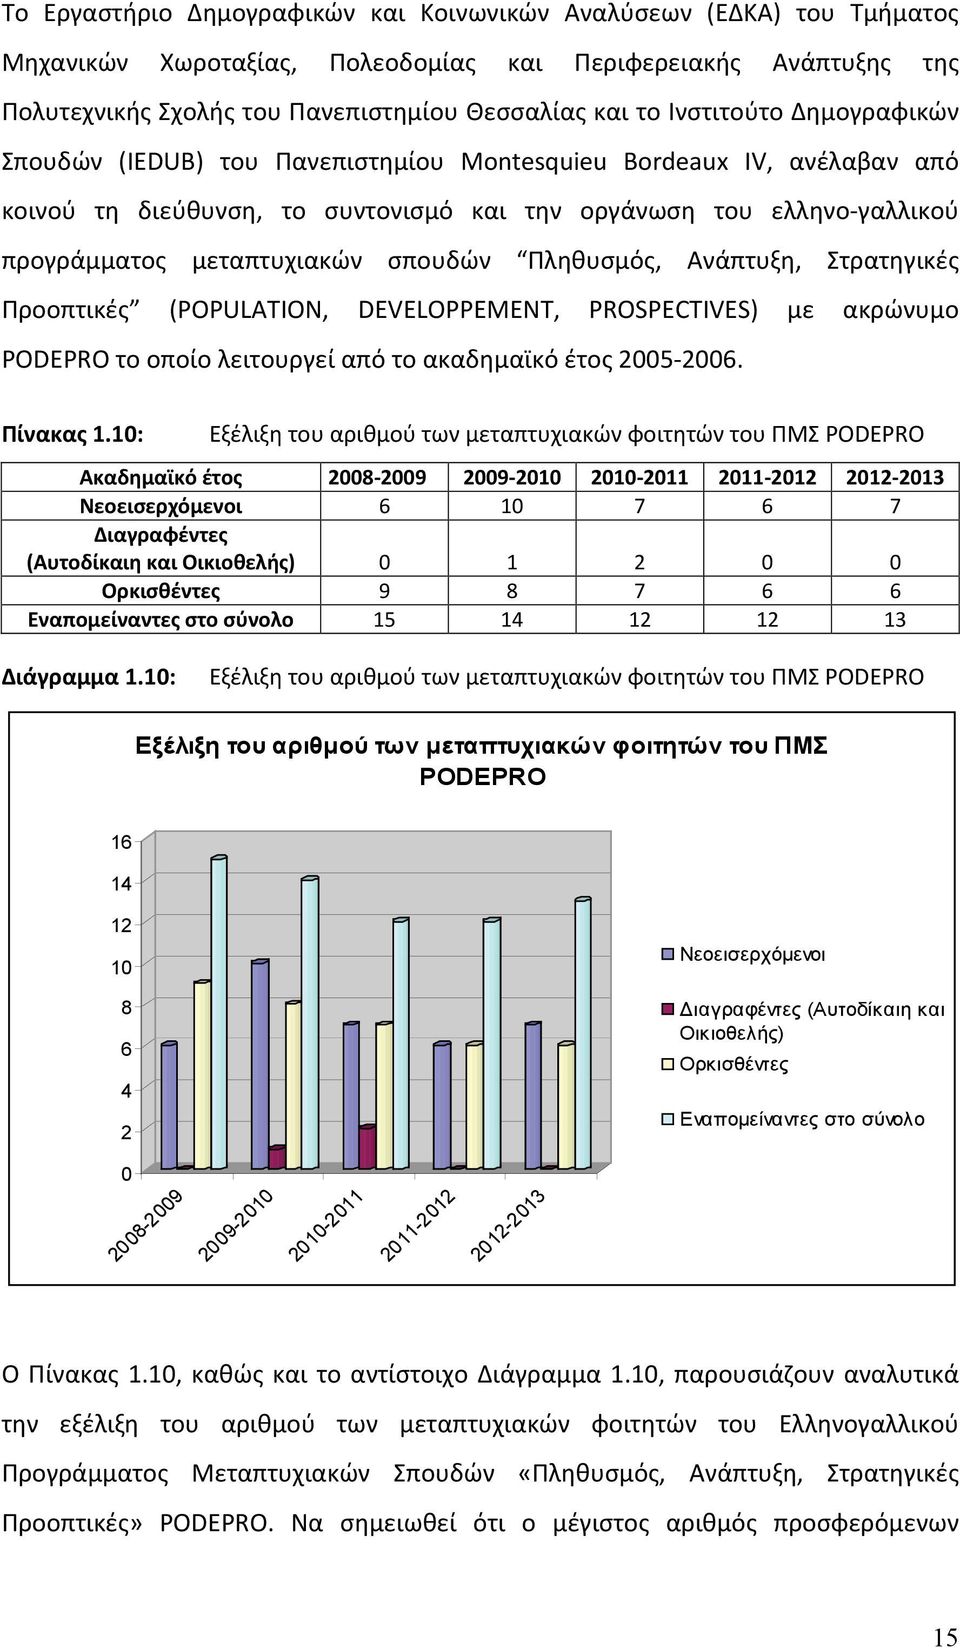 σπουδών Πληθυσμός, Ανάπτυξη, Στρατηγικές Προοπτικές (POPULATION, DEVELOPPEMENT, PROSPECTIVES) με ακρώνυμο PODEPRO το οποίο λειτουργεί από το ακαδημαϊκό έτος 2005-2006. Πίνακας 1.